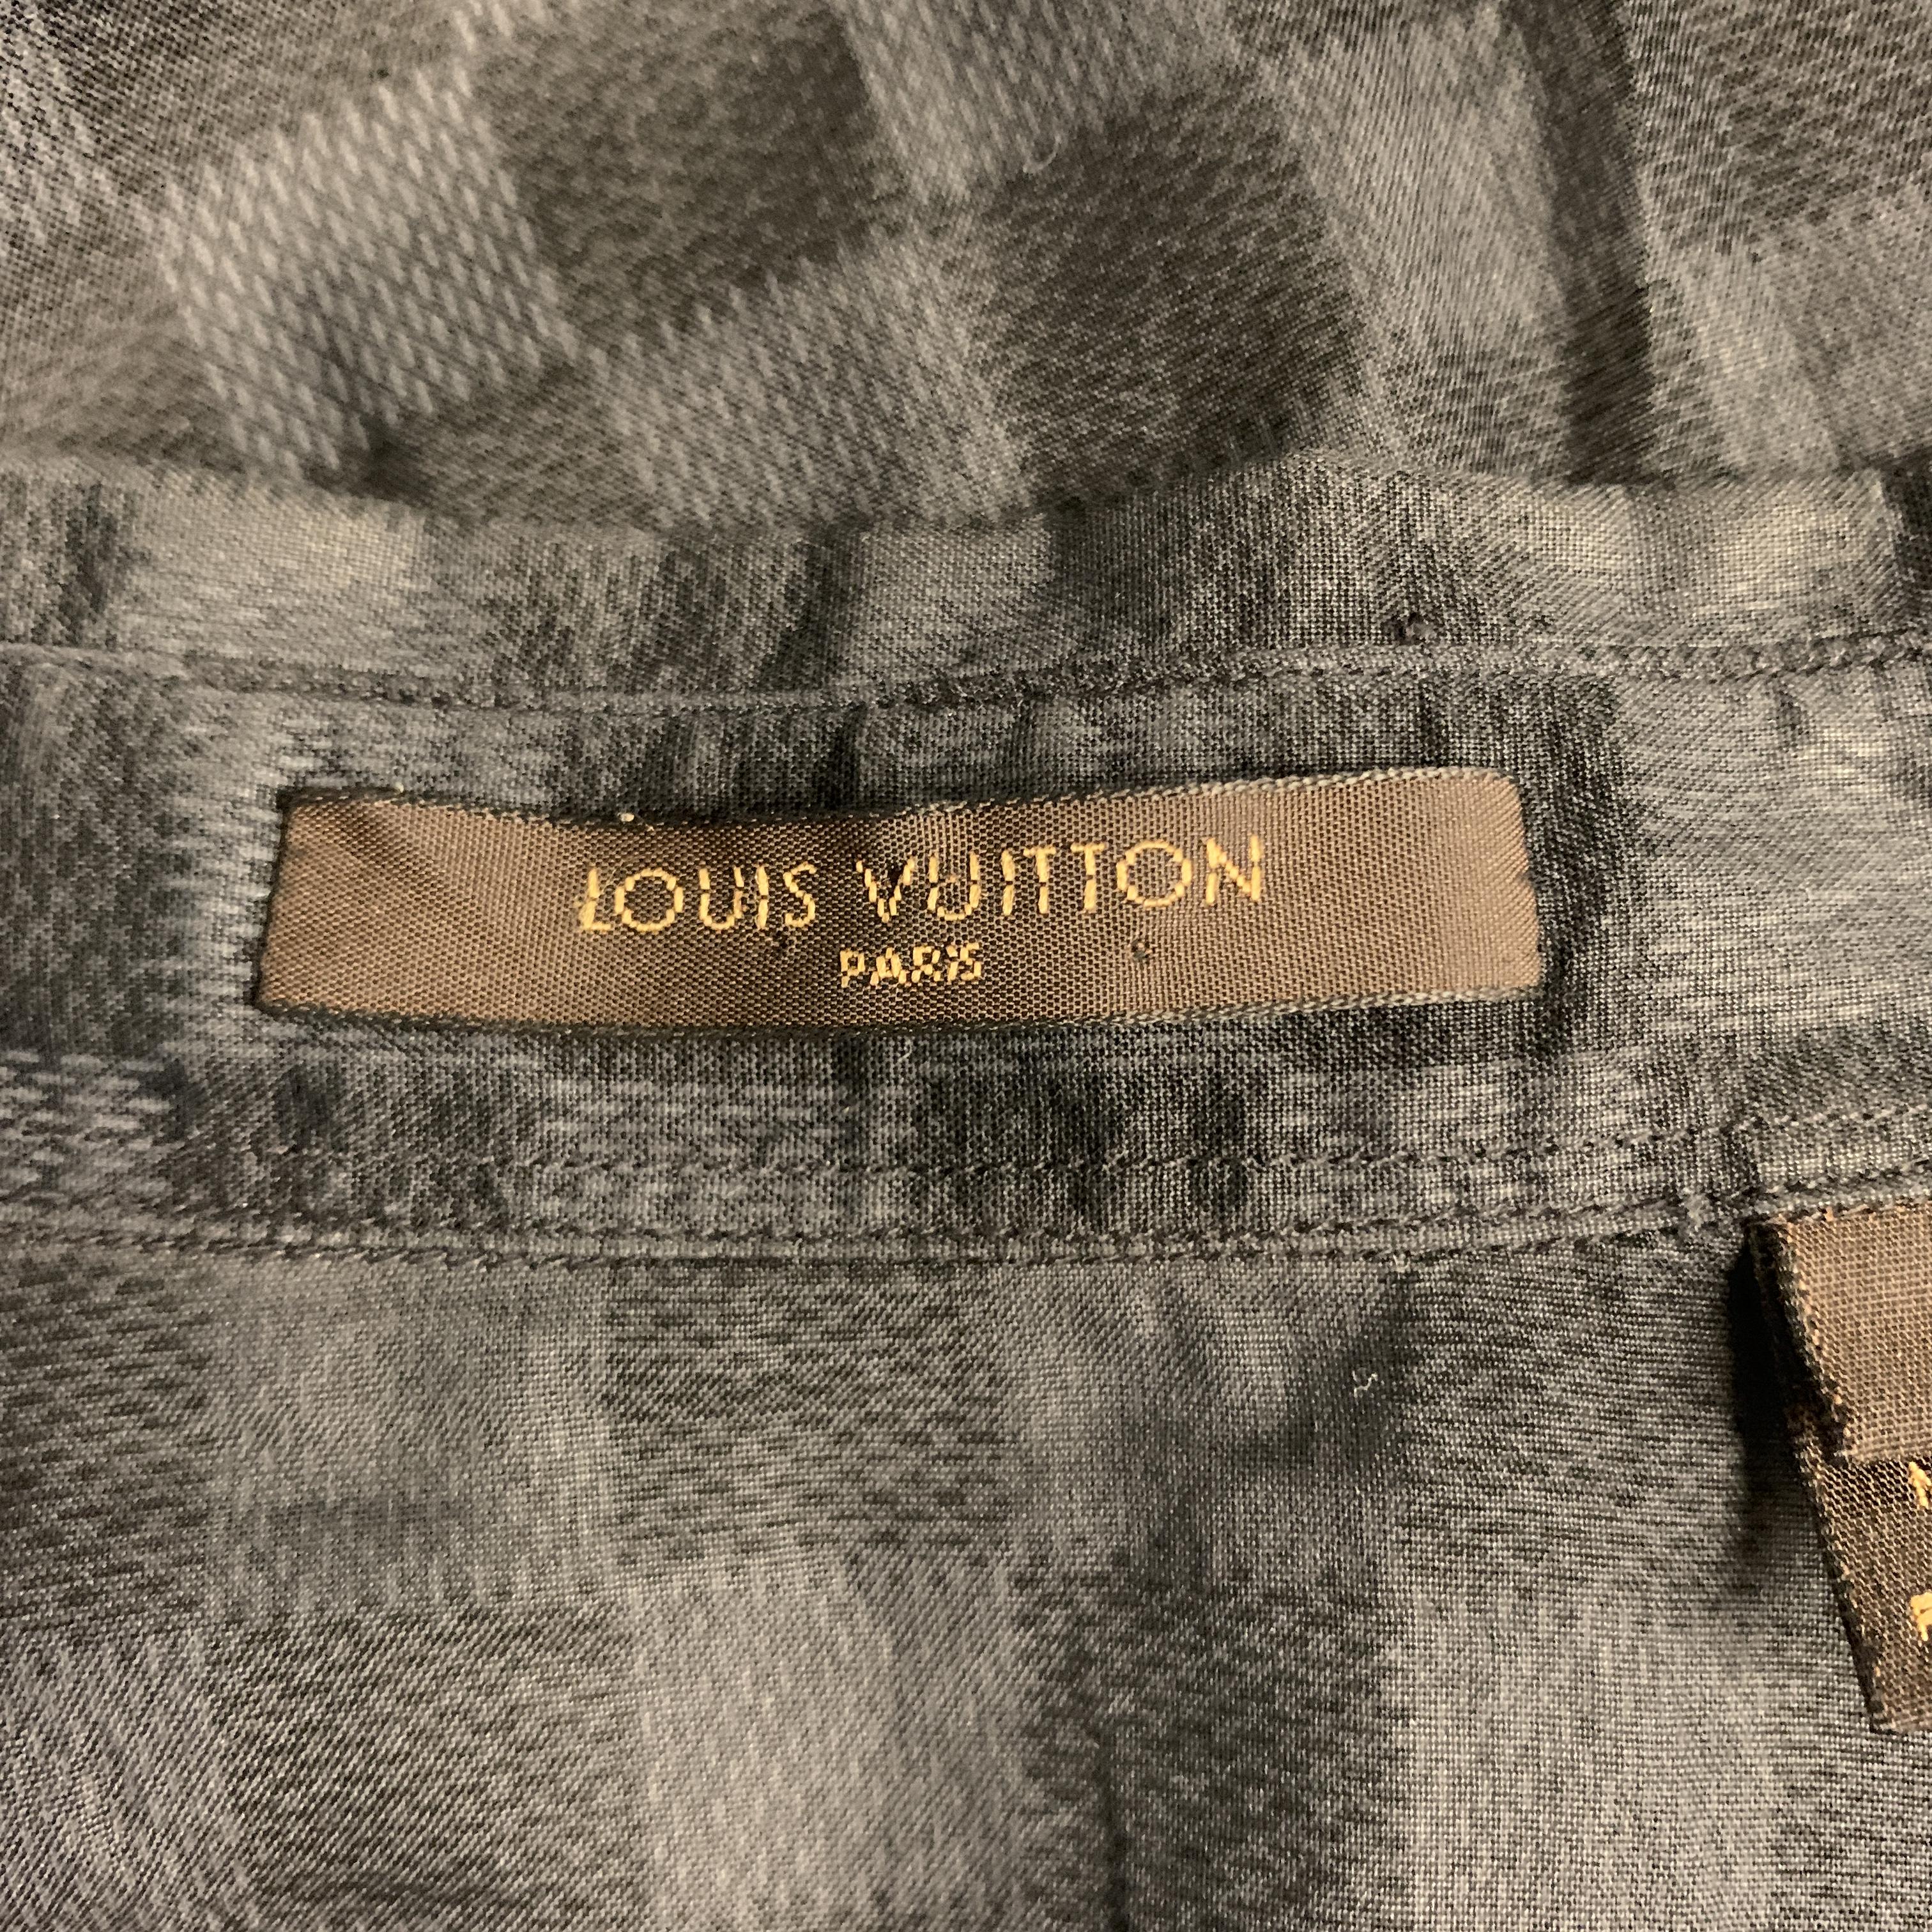 Men's LOUIS VUITTON Size S Gray & Black Damier Cotton Button Up Long Sleeve Shirt